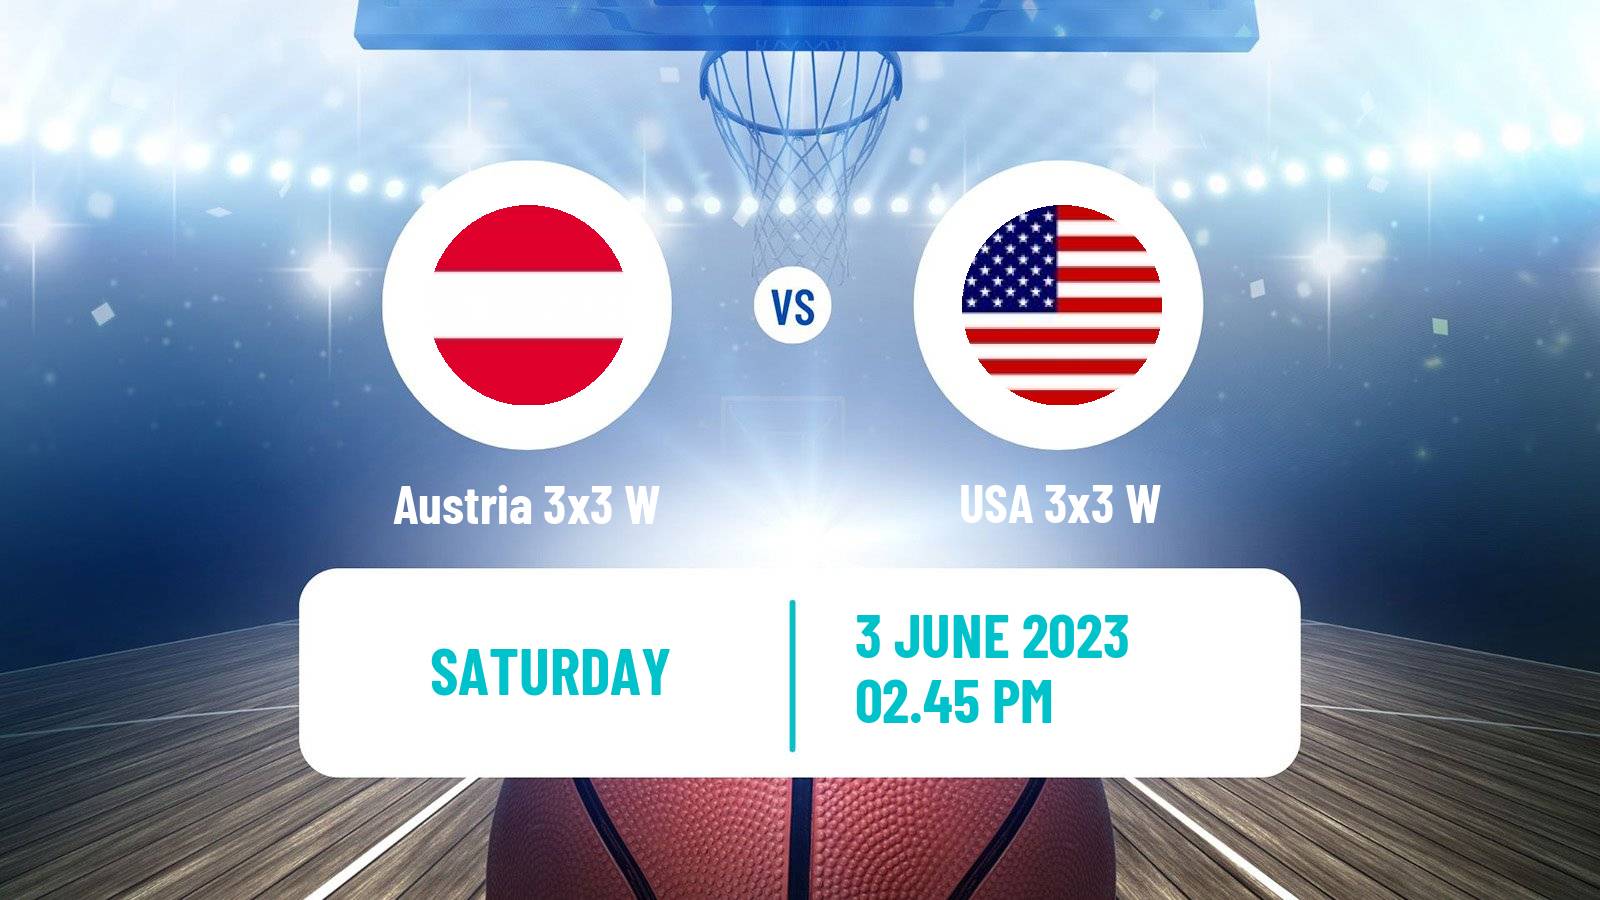 Basketball World Cup Basketball 3x3 Women Austria 3x3 W - USA 3x3 W